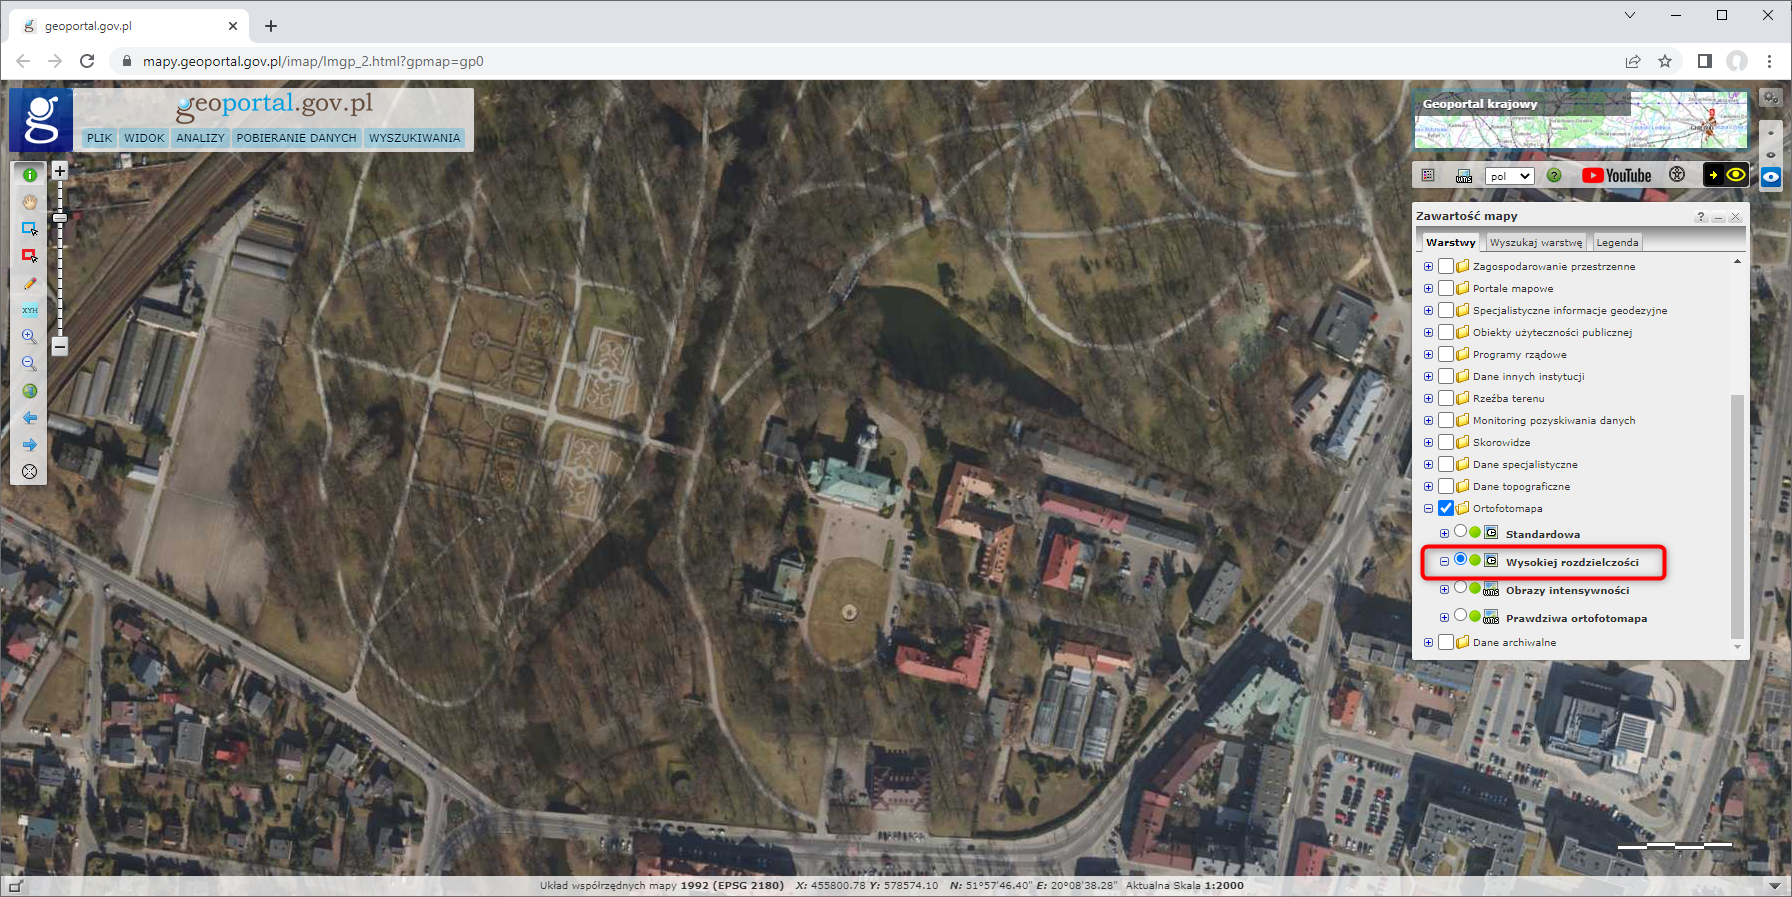 Ilustracja przedstawia zrzut ekranu z serwisu www.geoportal.gov.pl przedstawiający fragment miasta Skierniewice w usłudze Ortofotomapa Wysokiej Rozdzielczości